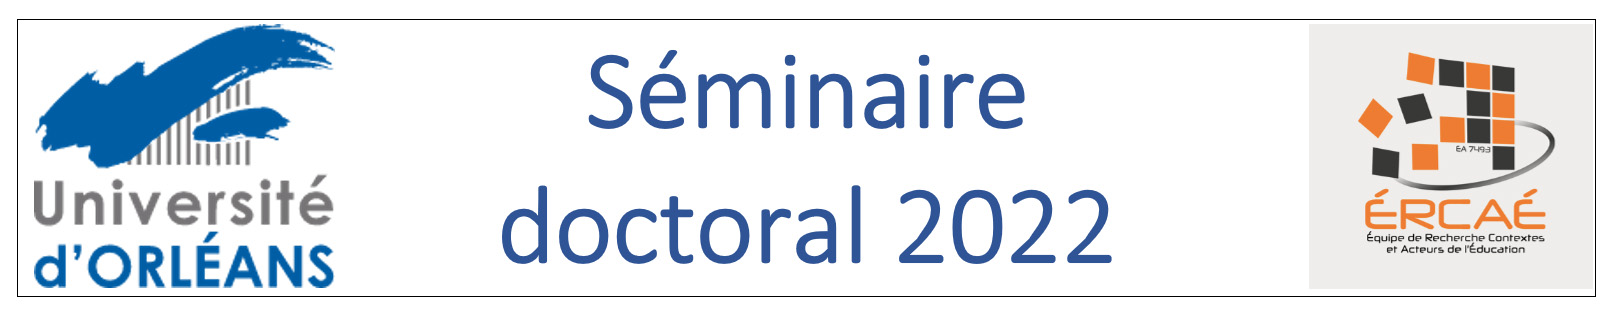 ERCEA - séminaire doctoral 2022